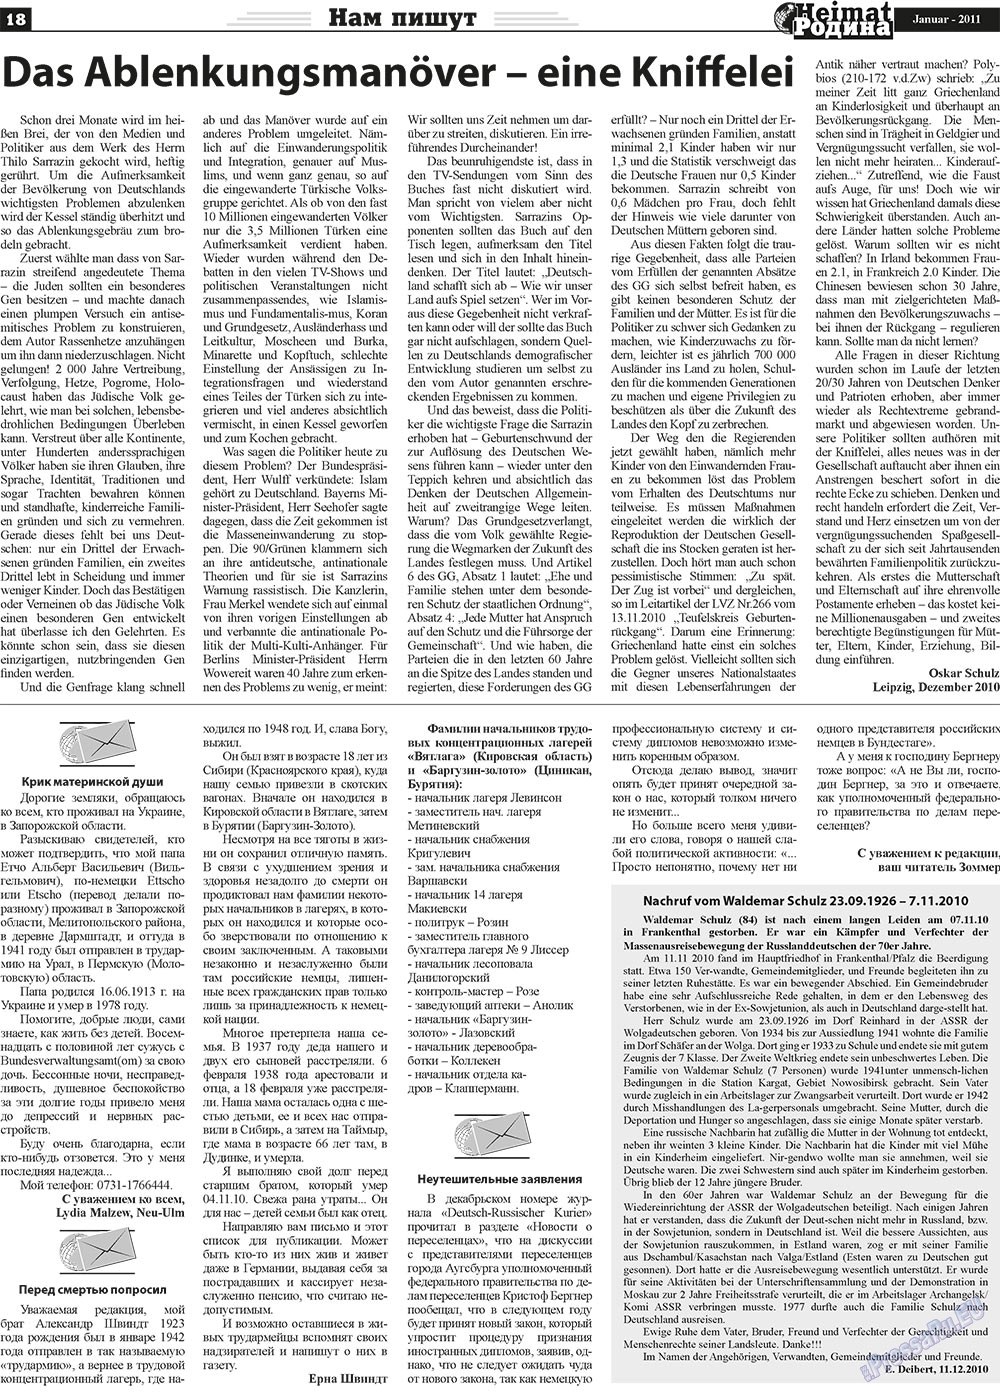 Heimat-Родина (Zeitung). 2011 Jahr, Ausgabe 1, Seite 18